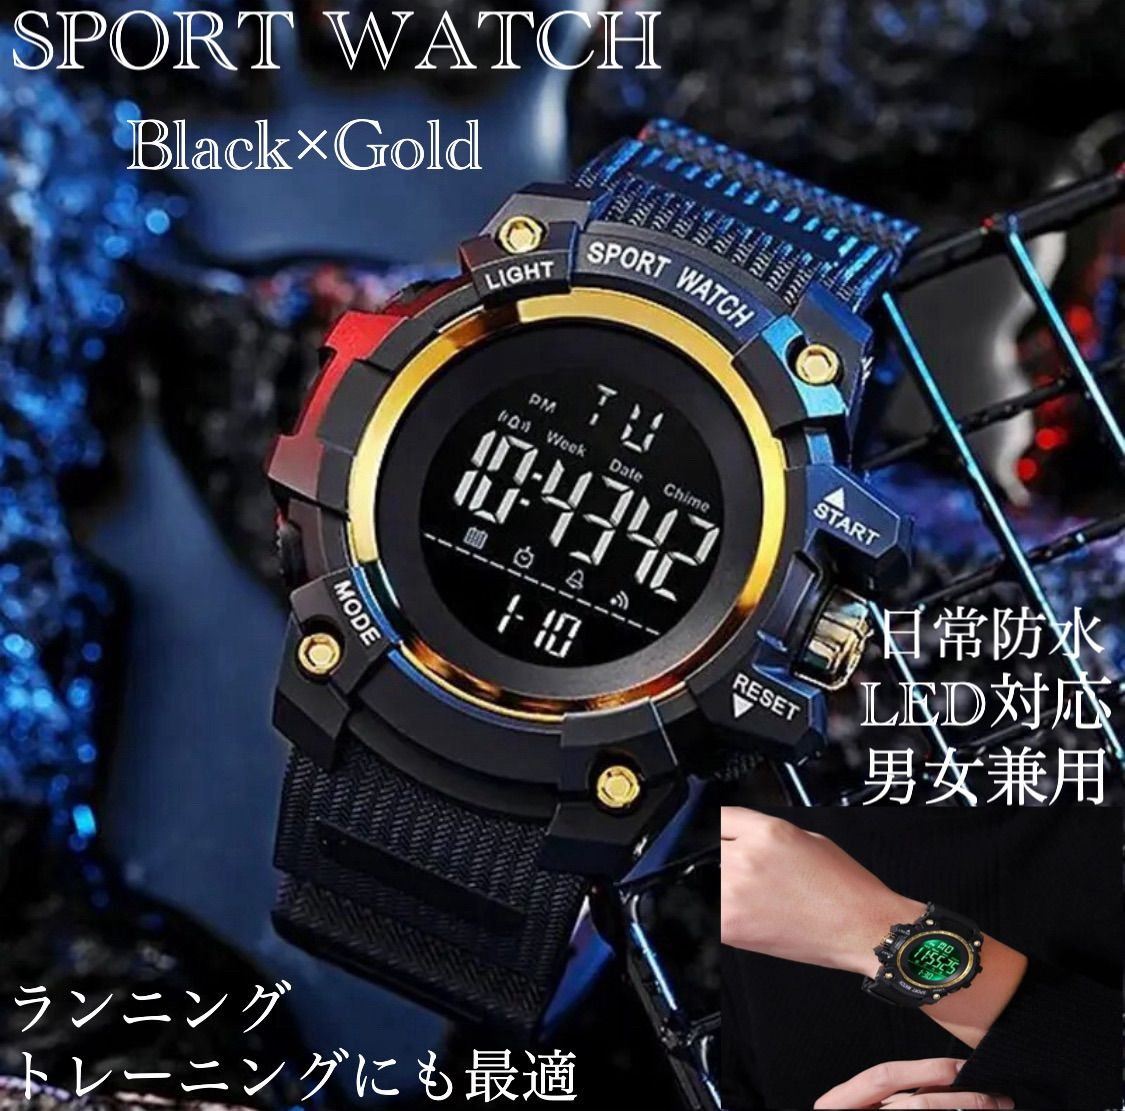 スポーツ腕時計 腕時計 時計 デジタル式 LED デジタル腕時計 デジタル 自転車 スポーツ アウトドア キャンプ ランニング アウトドア